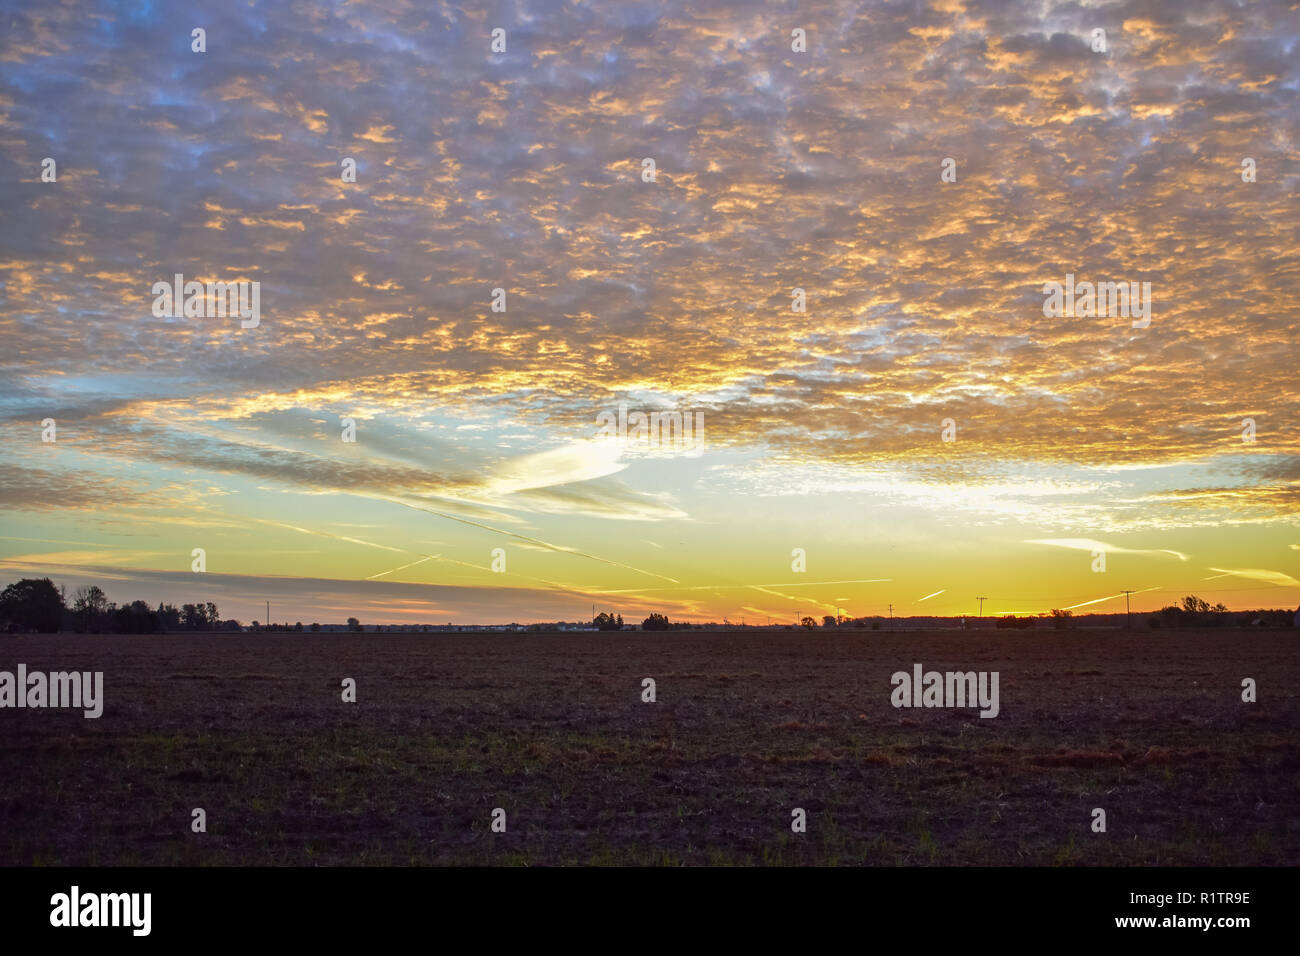 Sonnenaufgang in den ländlichen Usa. Das ist in den Minuten vor der Sonne Crest die Horizontlinie. Das weizenfeld im Vordergrund wurde geerntet. Stockfoto